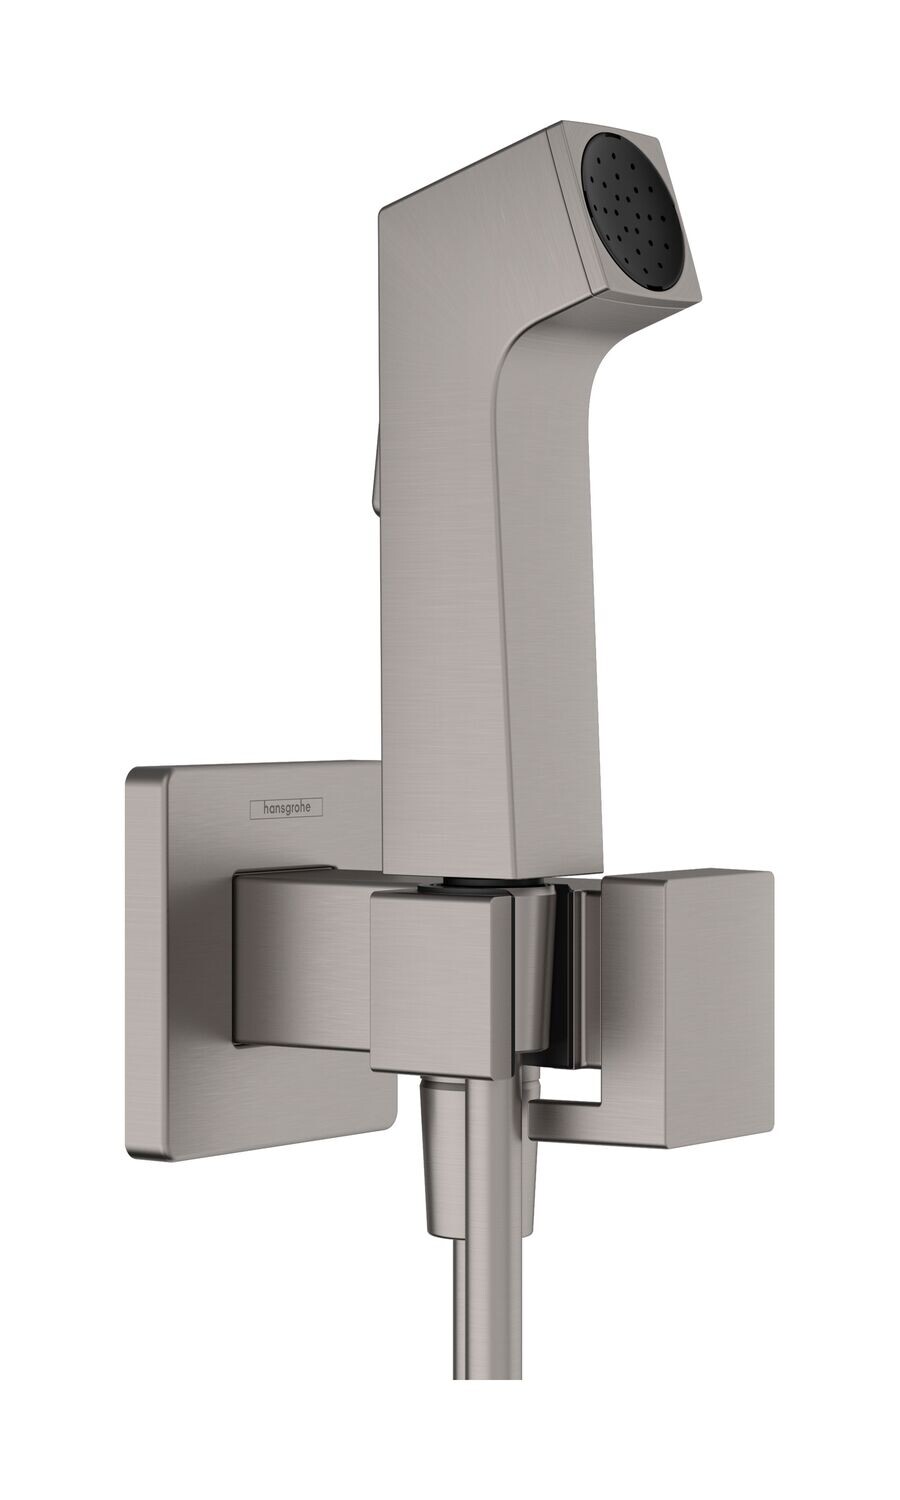 Douchette hygiénique pour WC Hansgrohe E en noir chromé brossé pour eau mitigée avec support et flexible